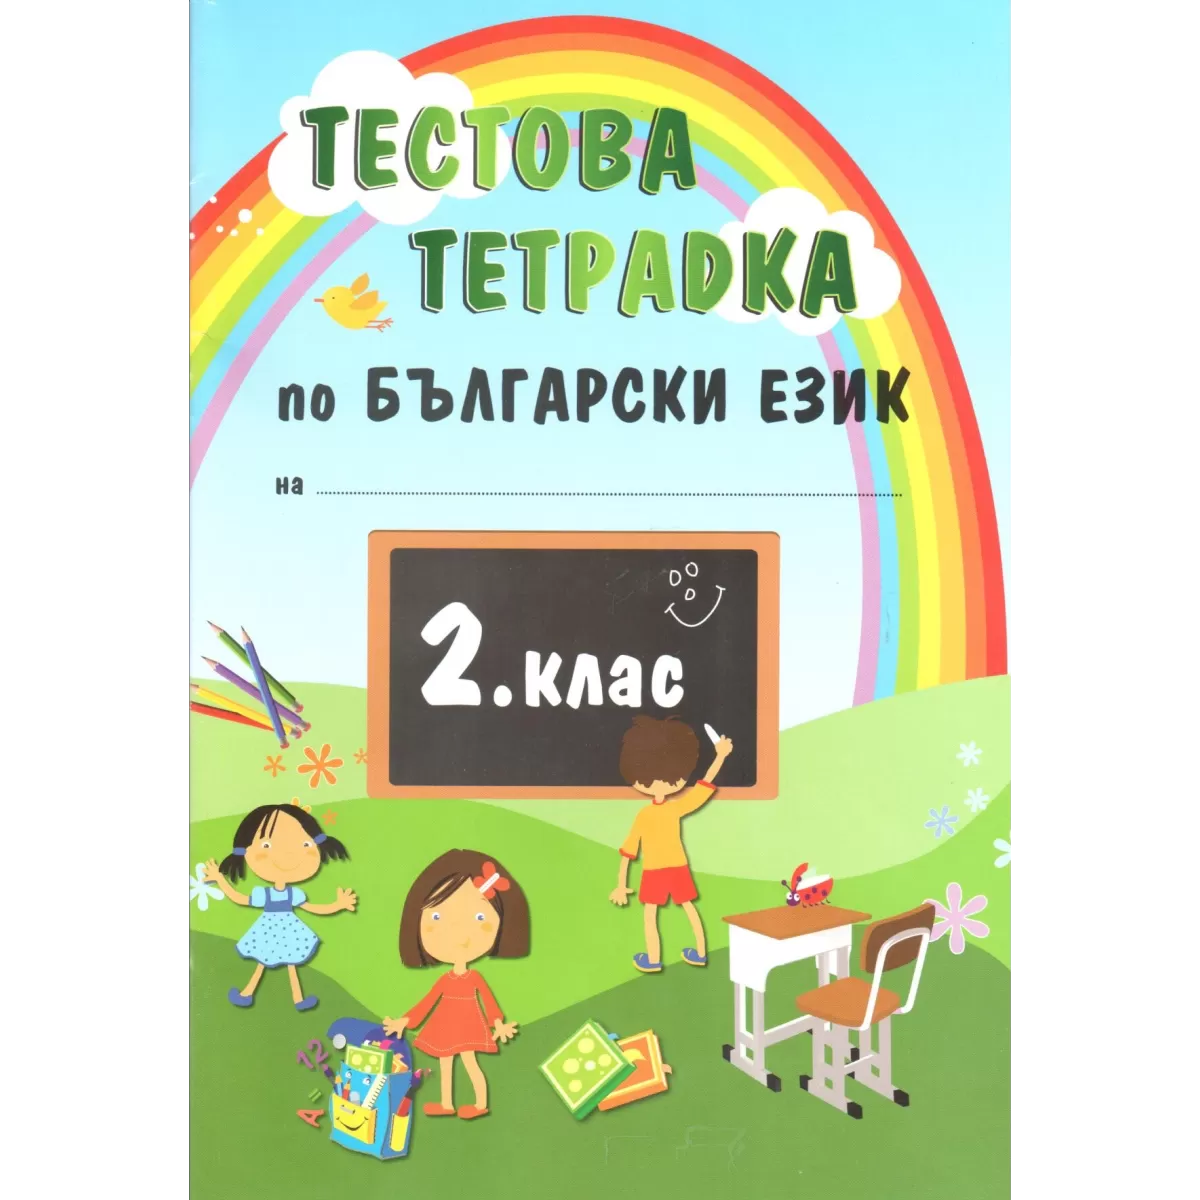 Тестова тетрадка по български език за 2 клас